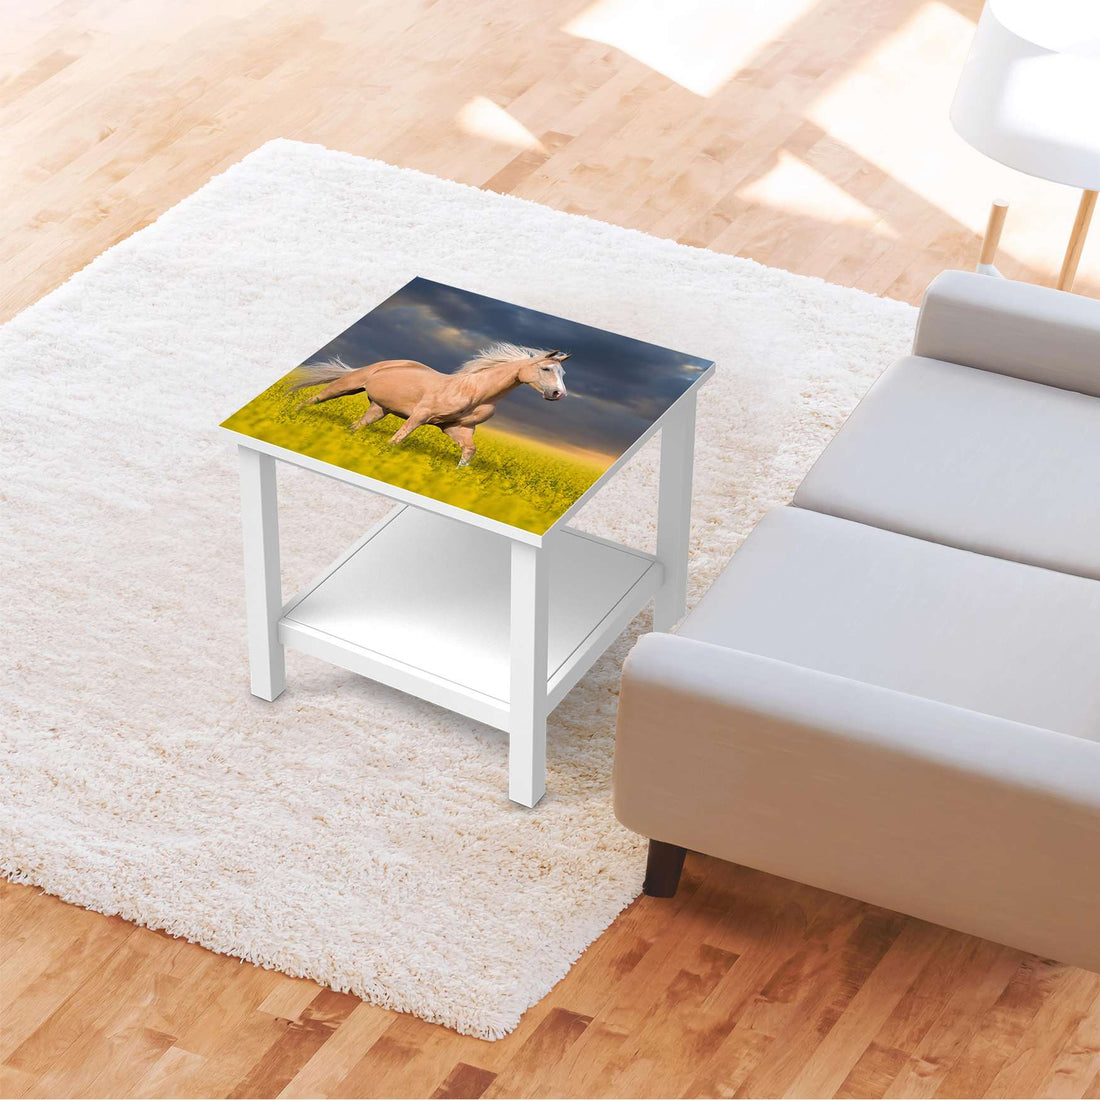 Möbel Klebefolie Wildpferd - IKEA Hemnes Beistelltisch 55x55 cm - Wohnzimmer